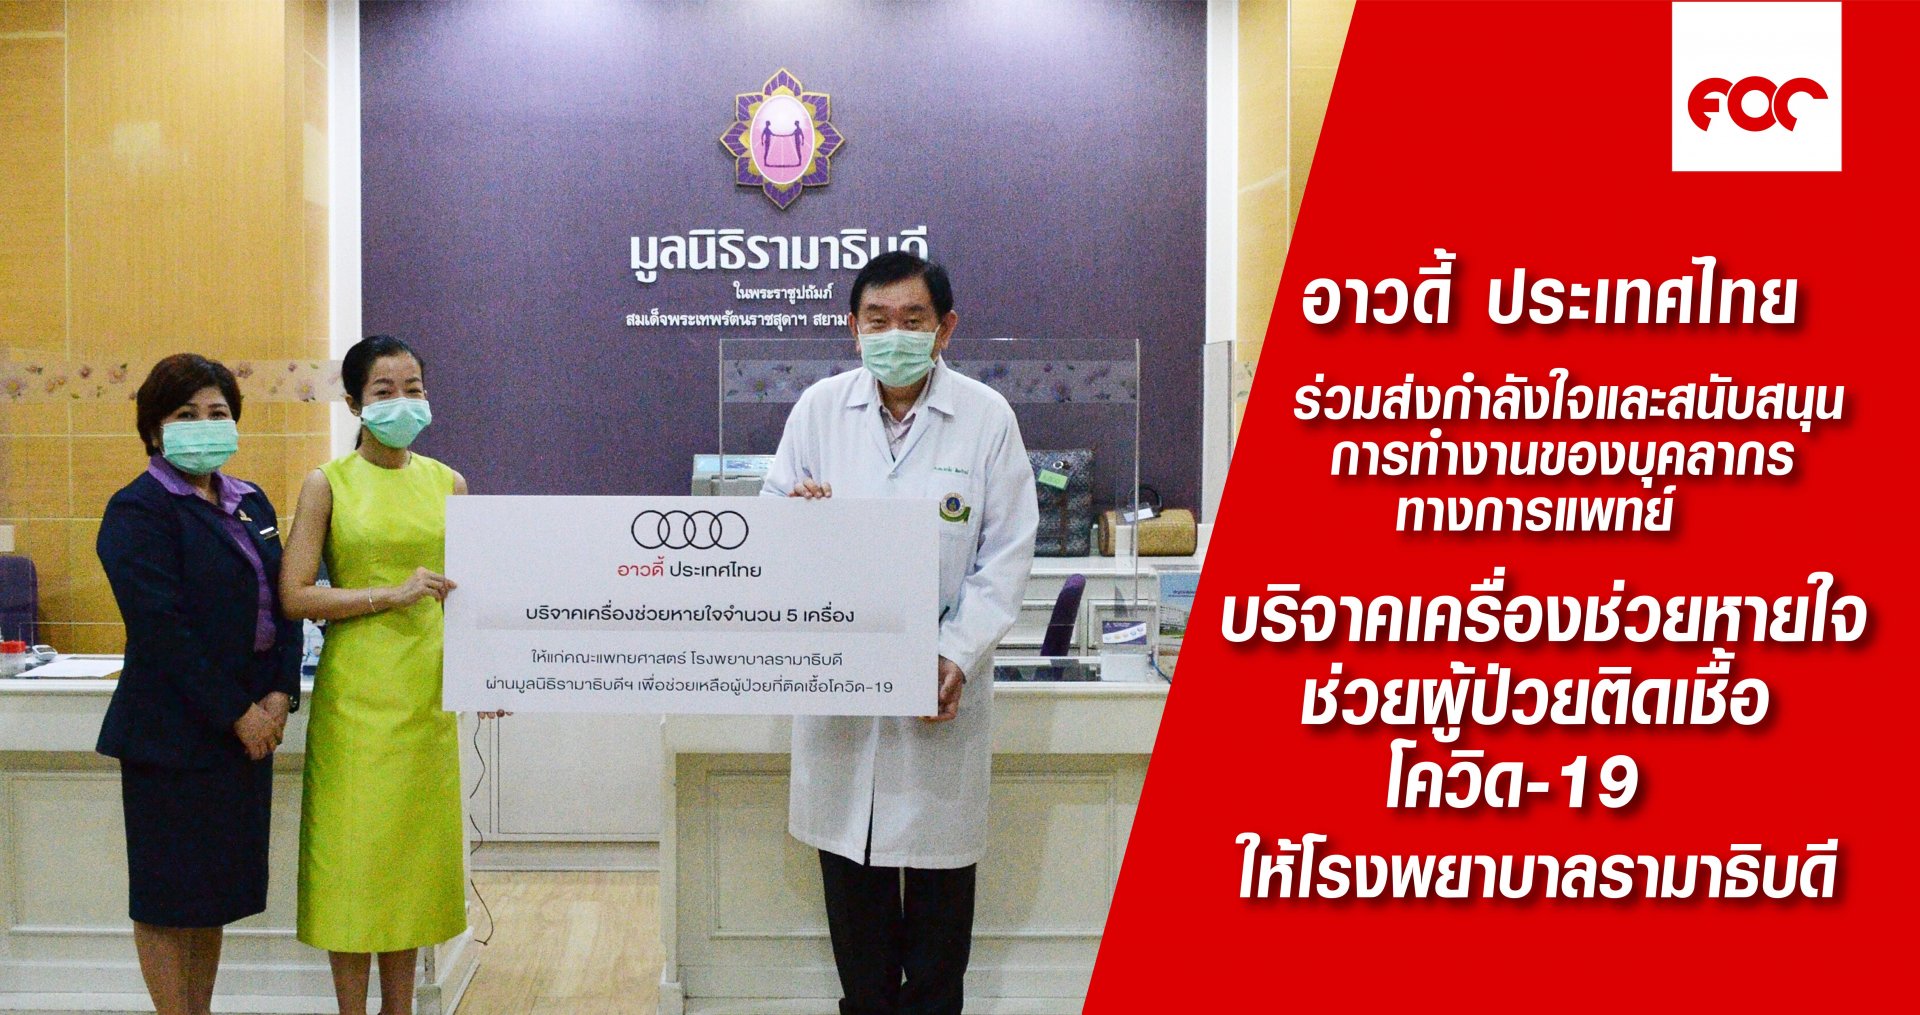 อาวดี้ ประเทศไทย ร่วมส่งกำลังใจและสนับสนุนการทำงานของบุคลากรทางการแพทย์  บริจาคเครื่องช่วยหายใจช่วยผู้ป่วยติดเชื้อโควิด-19 ให้โรงพยาบาลรามาธิบดี